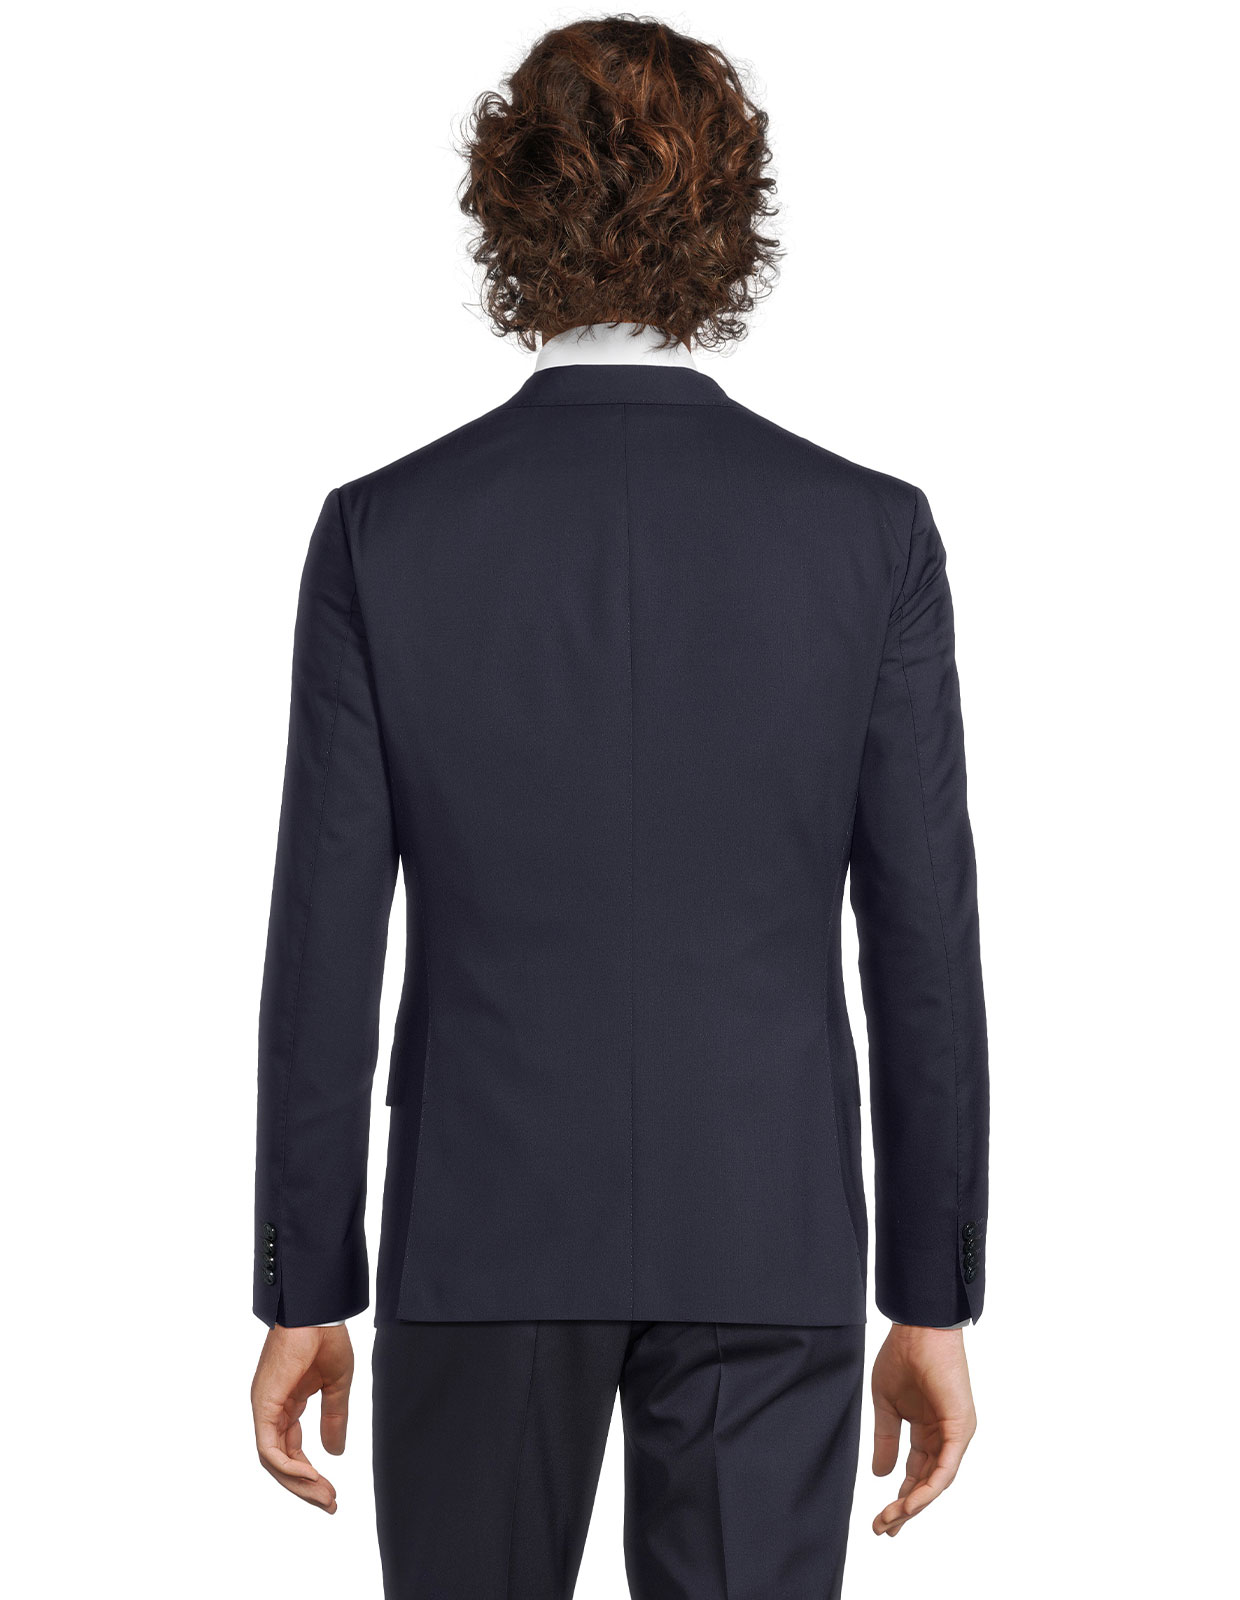 Edmund Suit Jacket Slim Fit Mix & Match Wool Dark Blue